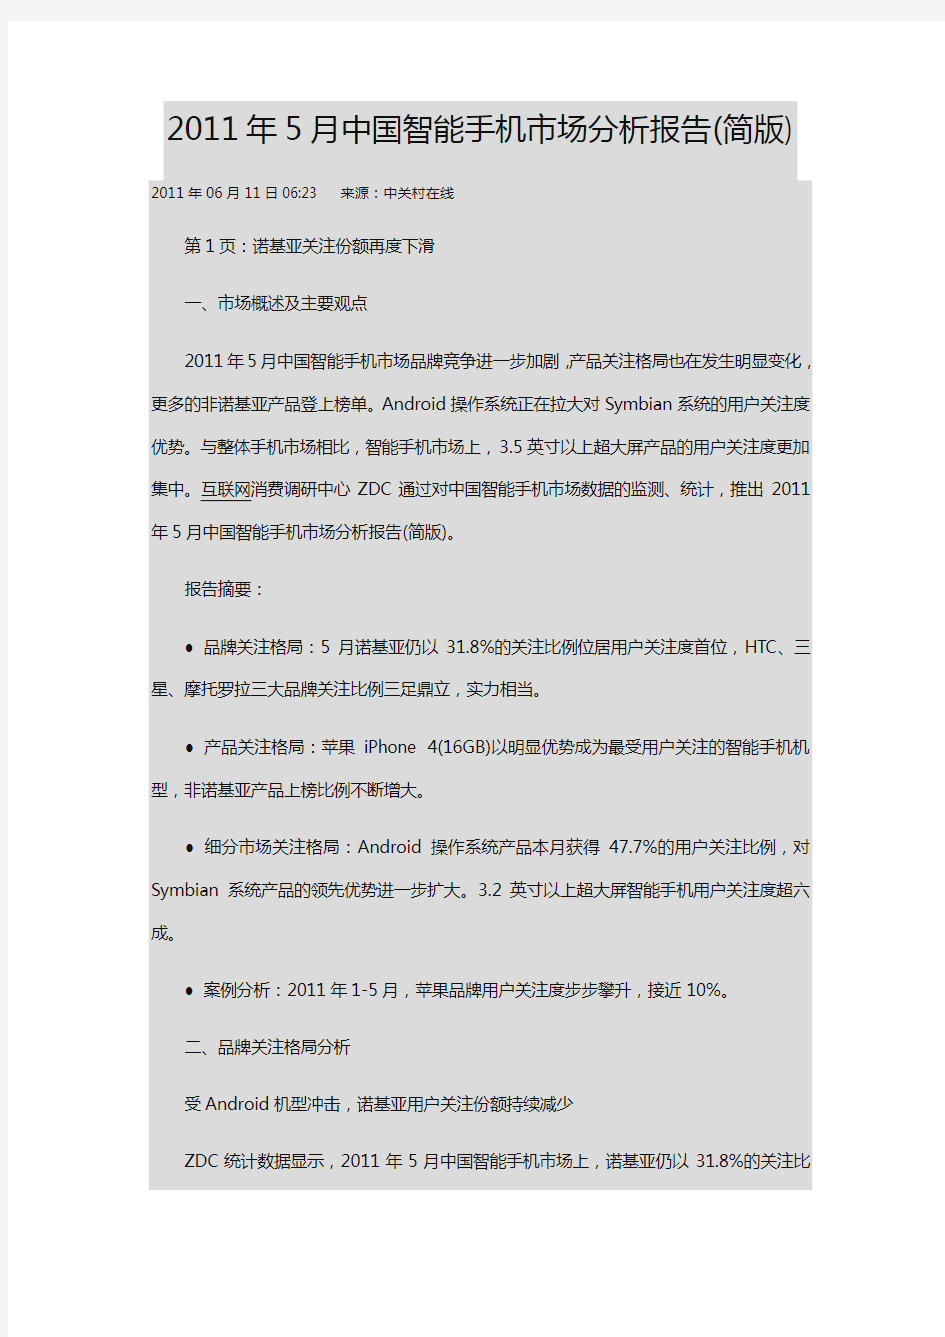 (年度报告)中国智能手机市场分析报告(简版)